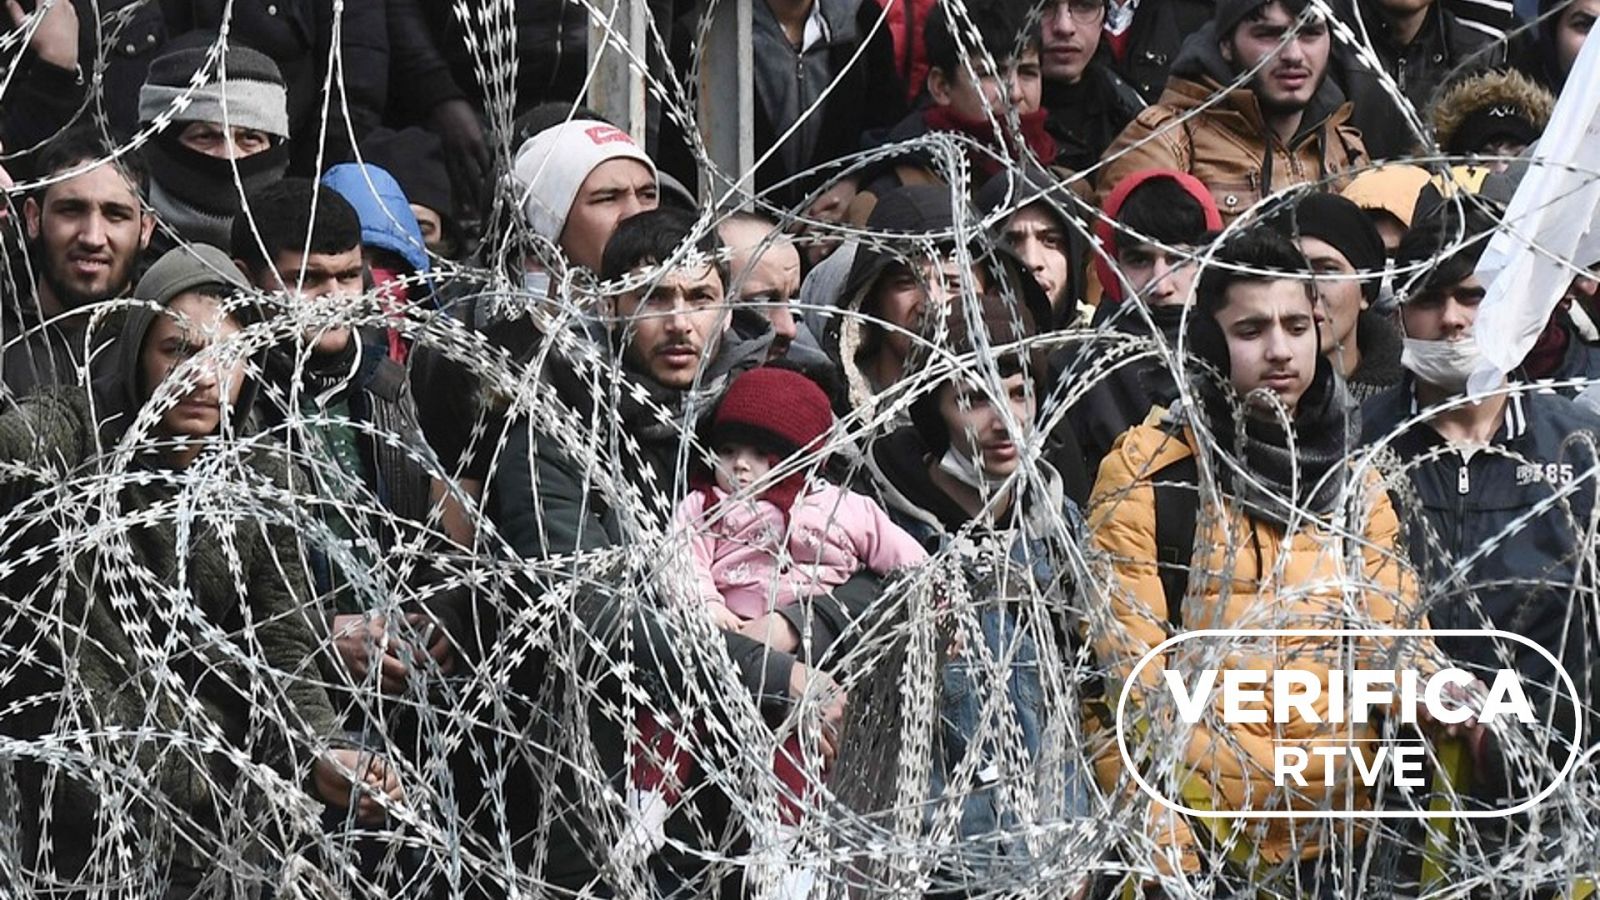 Imagen de migrantes esperando tras una verja en la frontera de Turquía con Grecia, con el sello blanco de VerificaRTVE